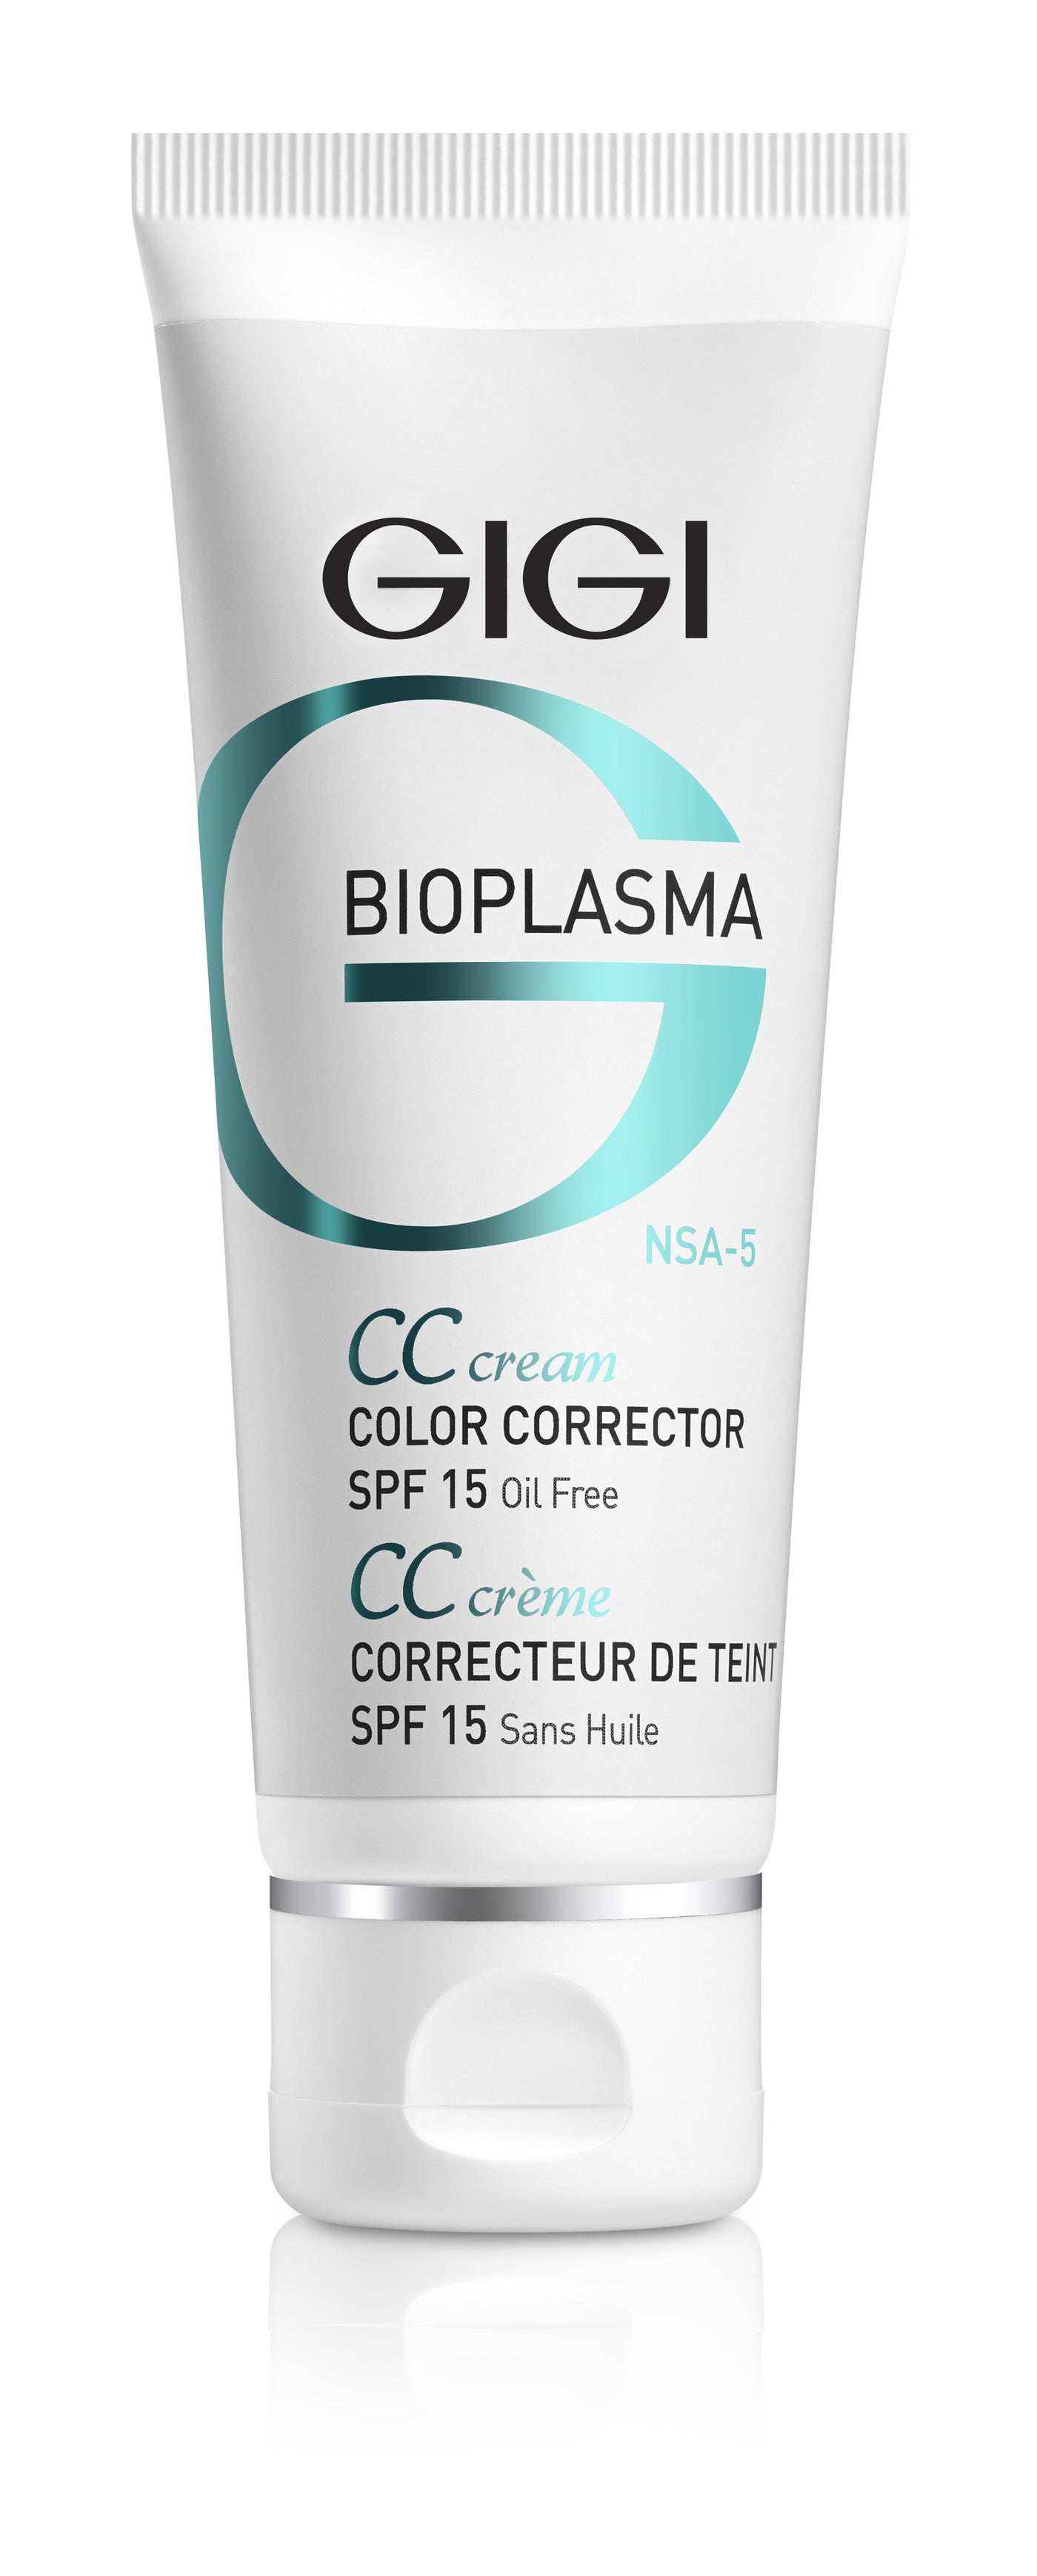 GIGI Bioplasma CC Color Corrector SPF 15